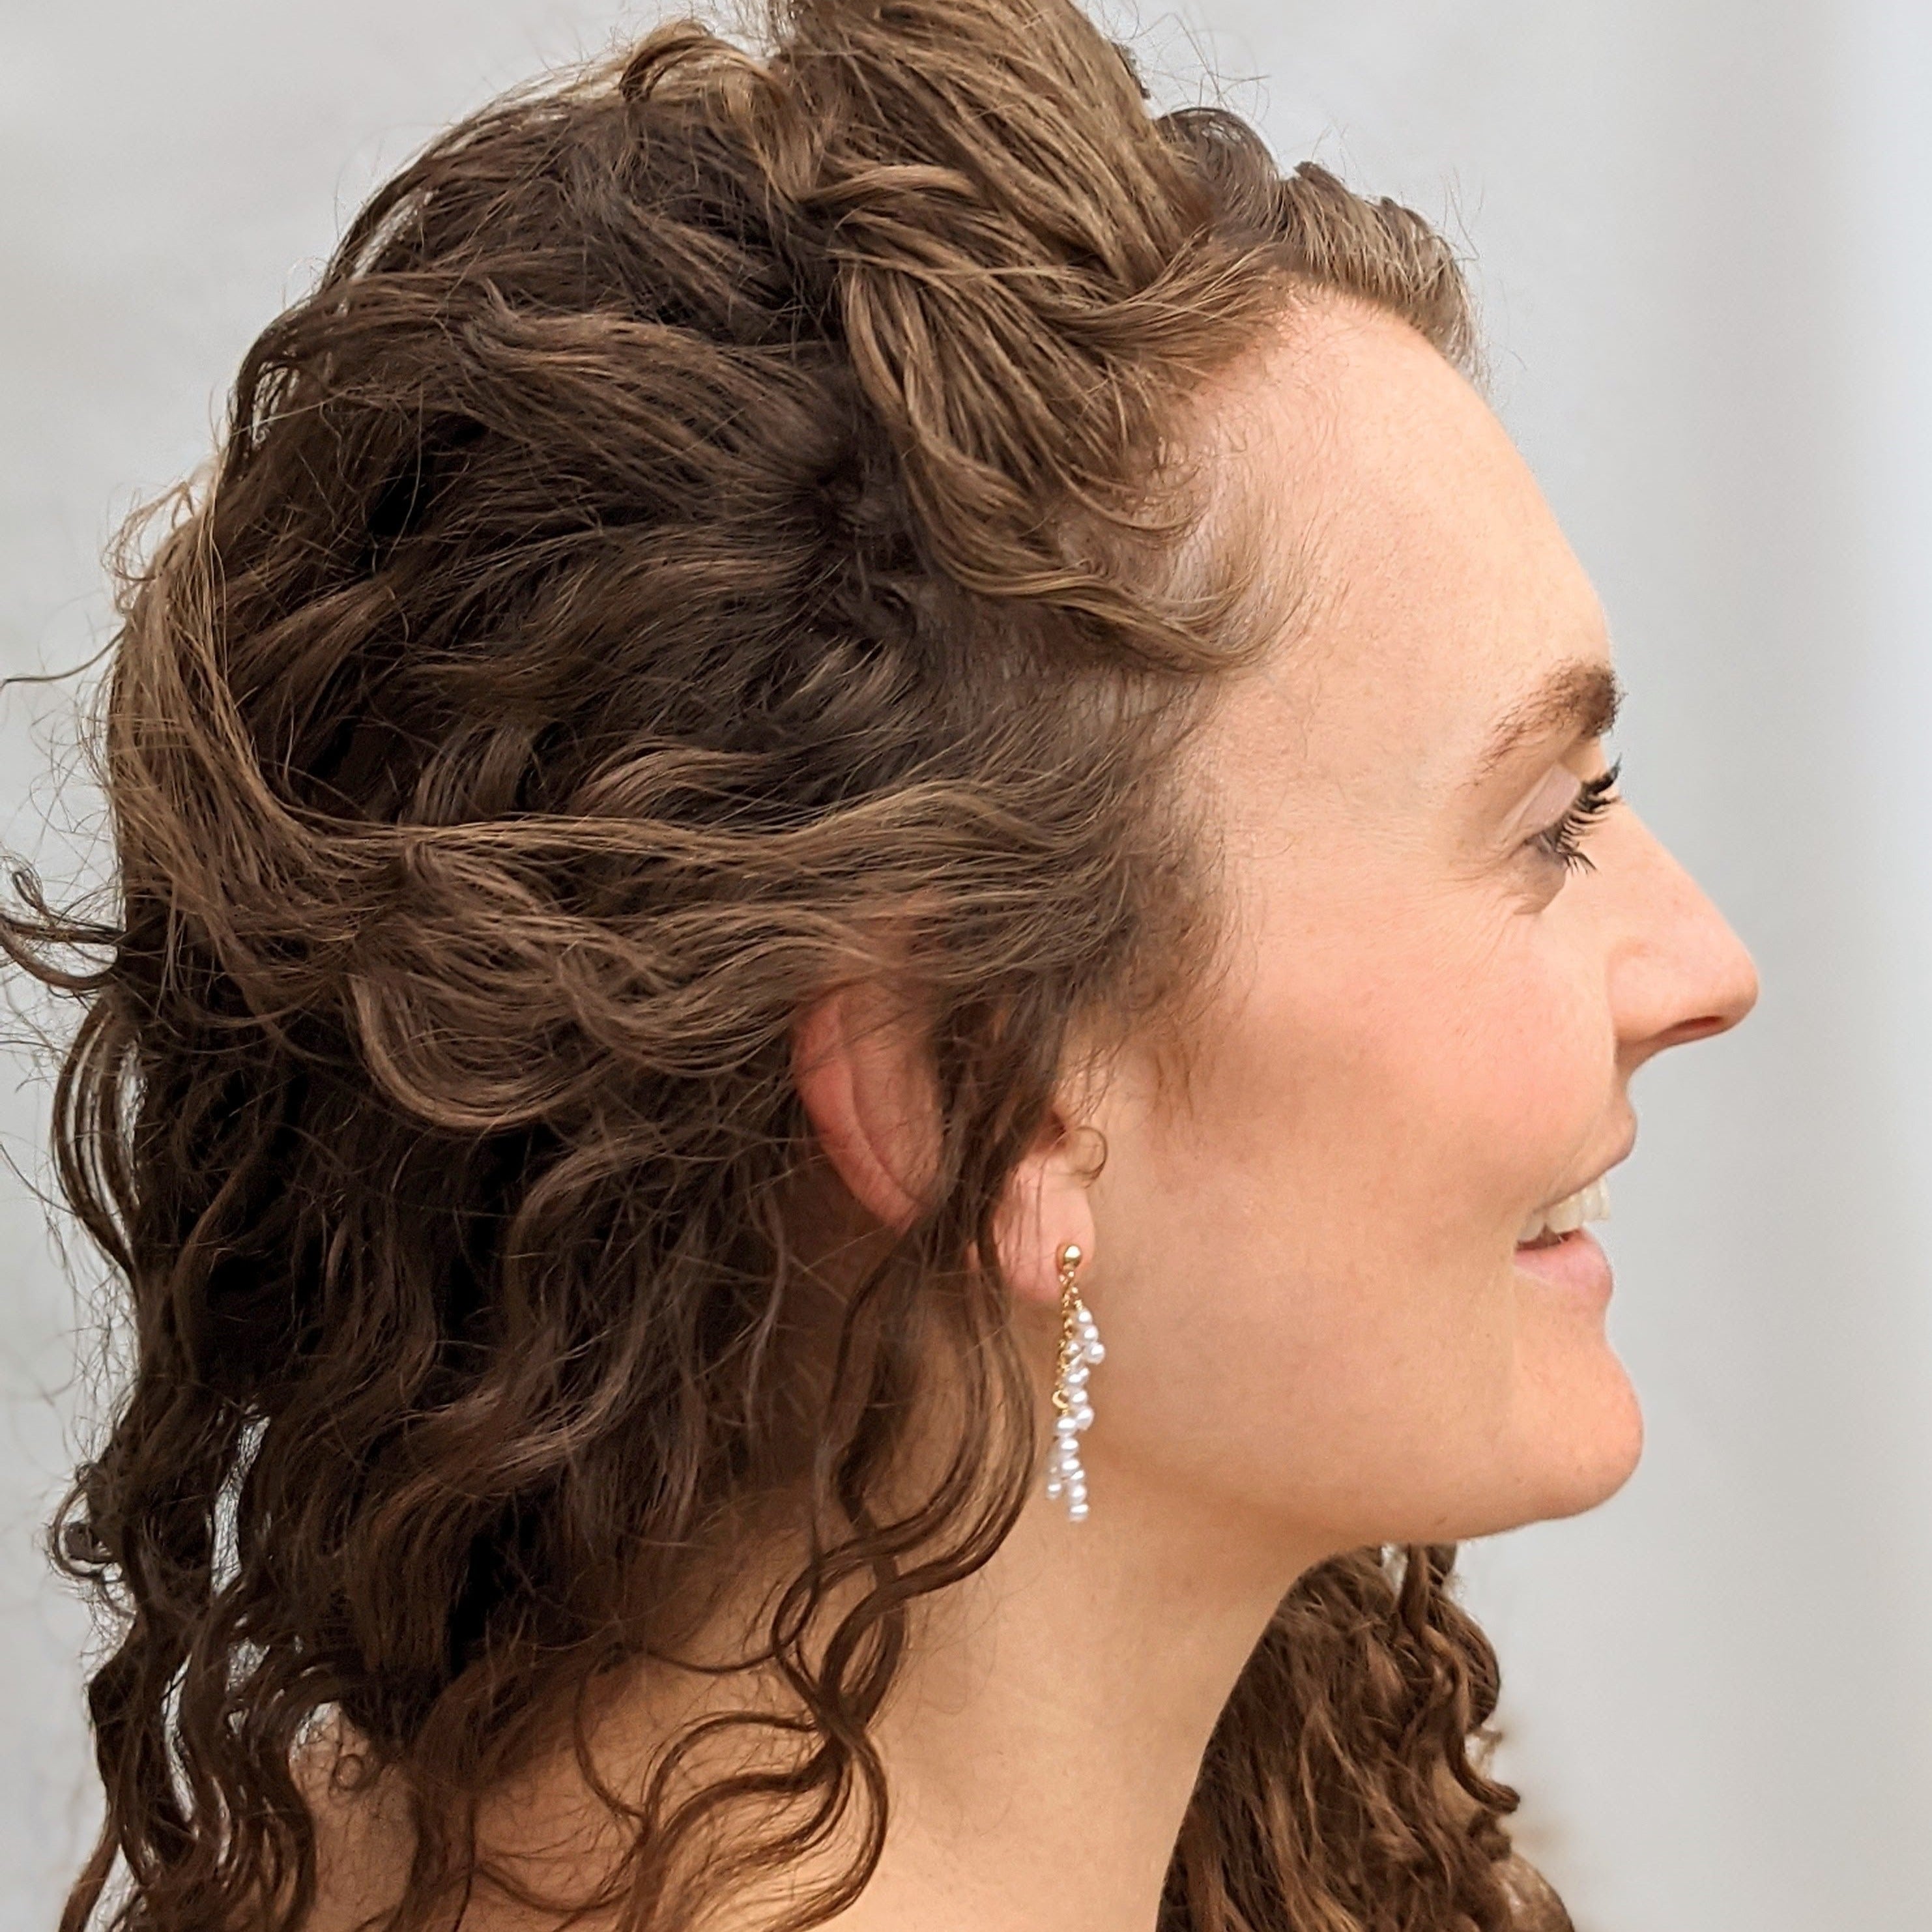 Model with curly brown hair wearing pearl earrings